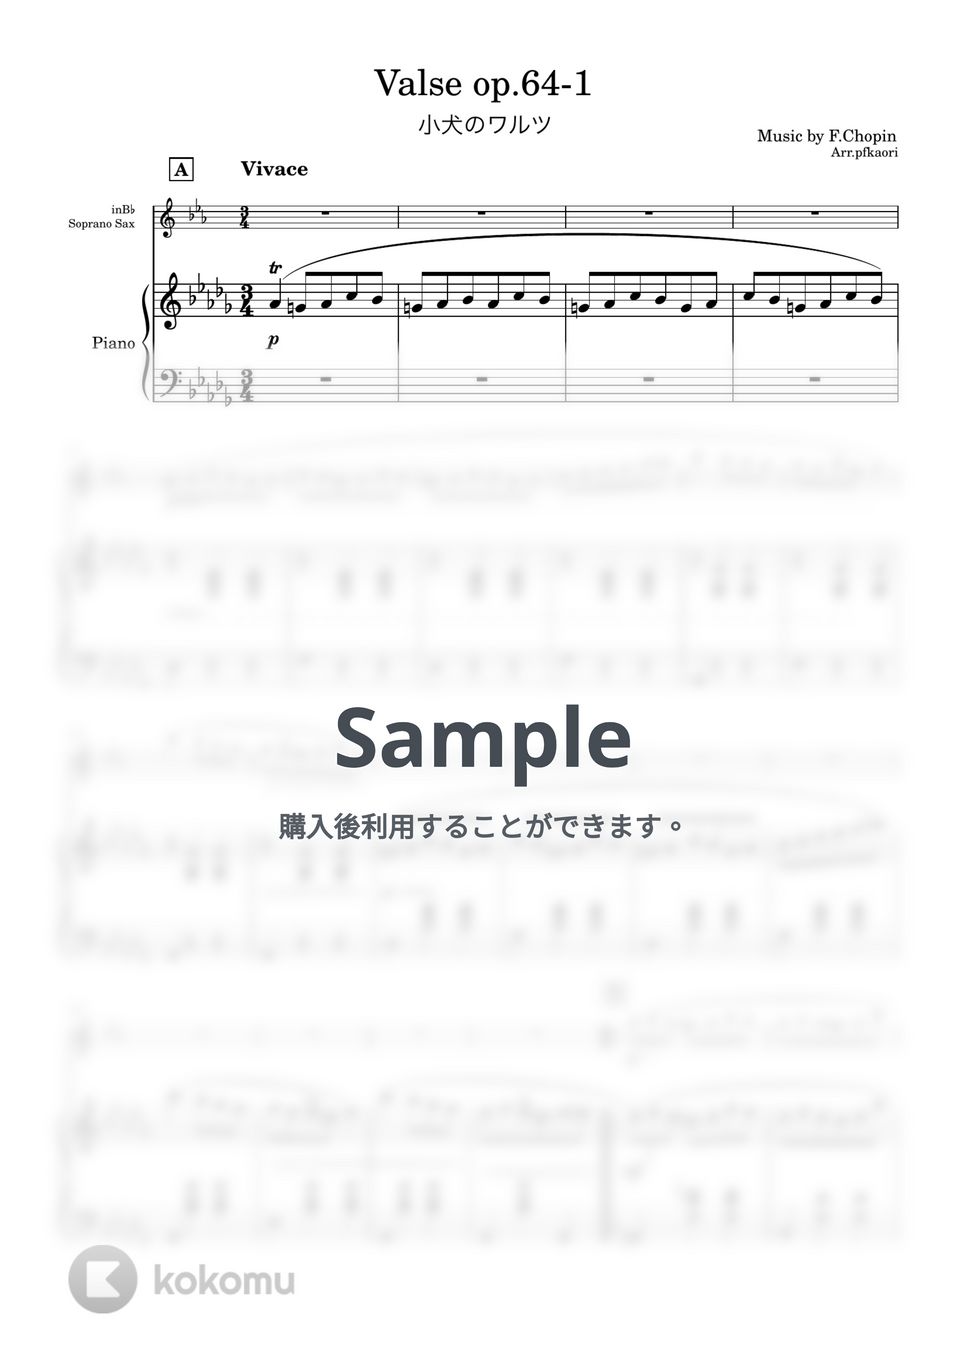 ショパン - 小犬のワルツ (1版/Des・ソプラノサックス& ピアノ) by pfkaori